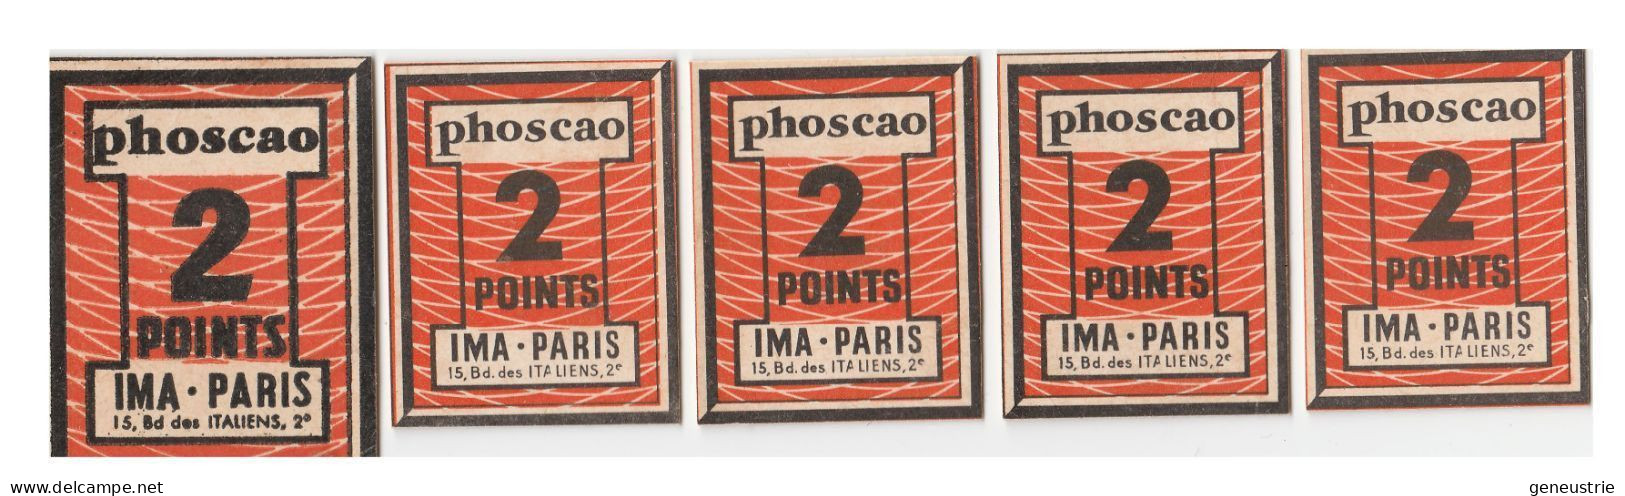 Lot De 5 Jeton-carton / Bon Prime Chocolat Années 50 "Phoscao 2 Points - IMA 15, Bd Des Italiens Paris 2e" - Notgeld